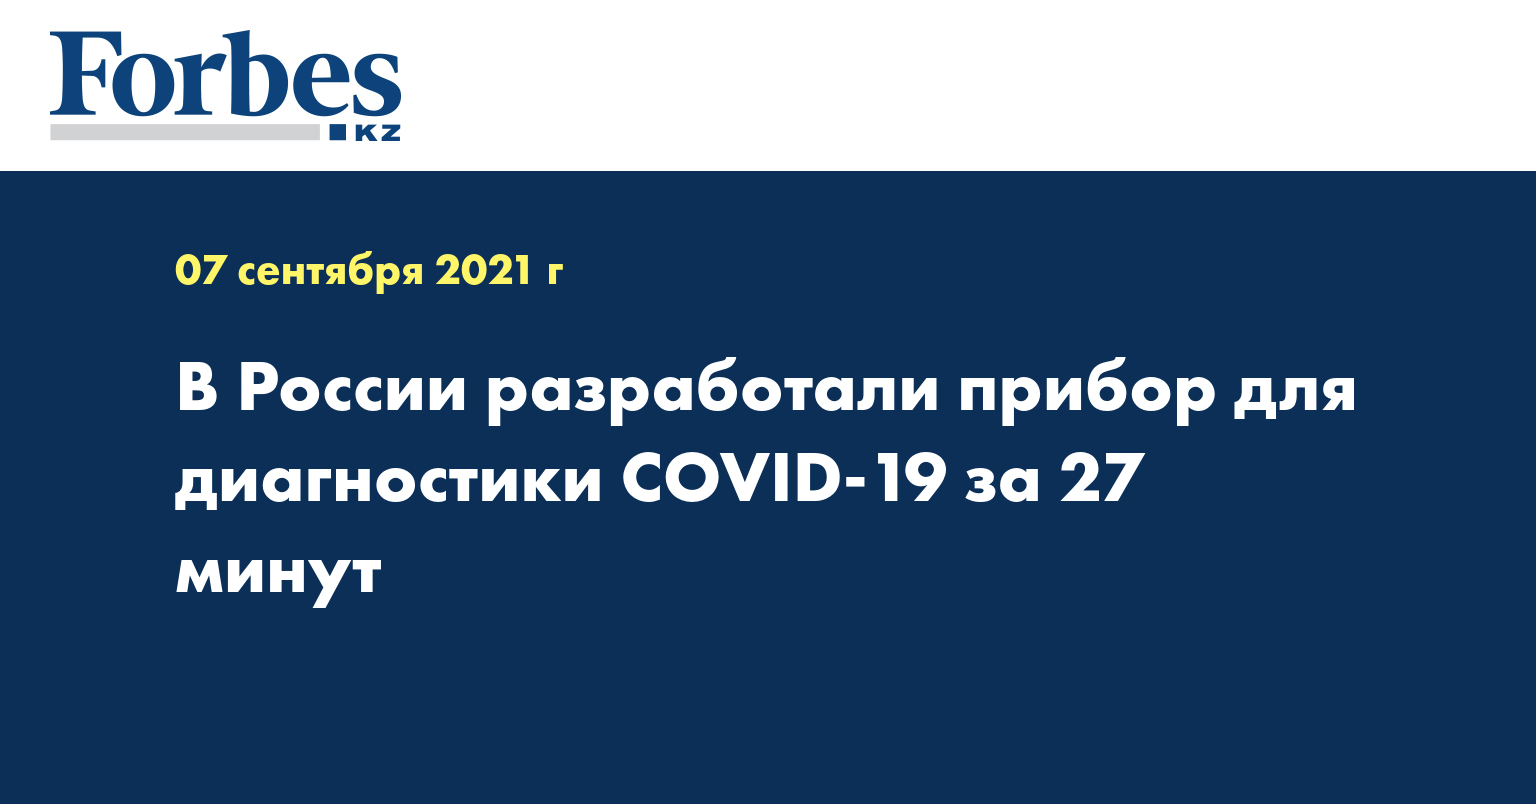  В России разработали прибор для диагностики COVID-19 за 27 минут